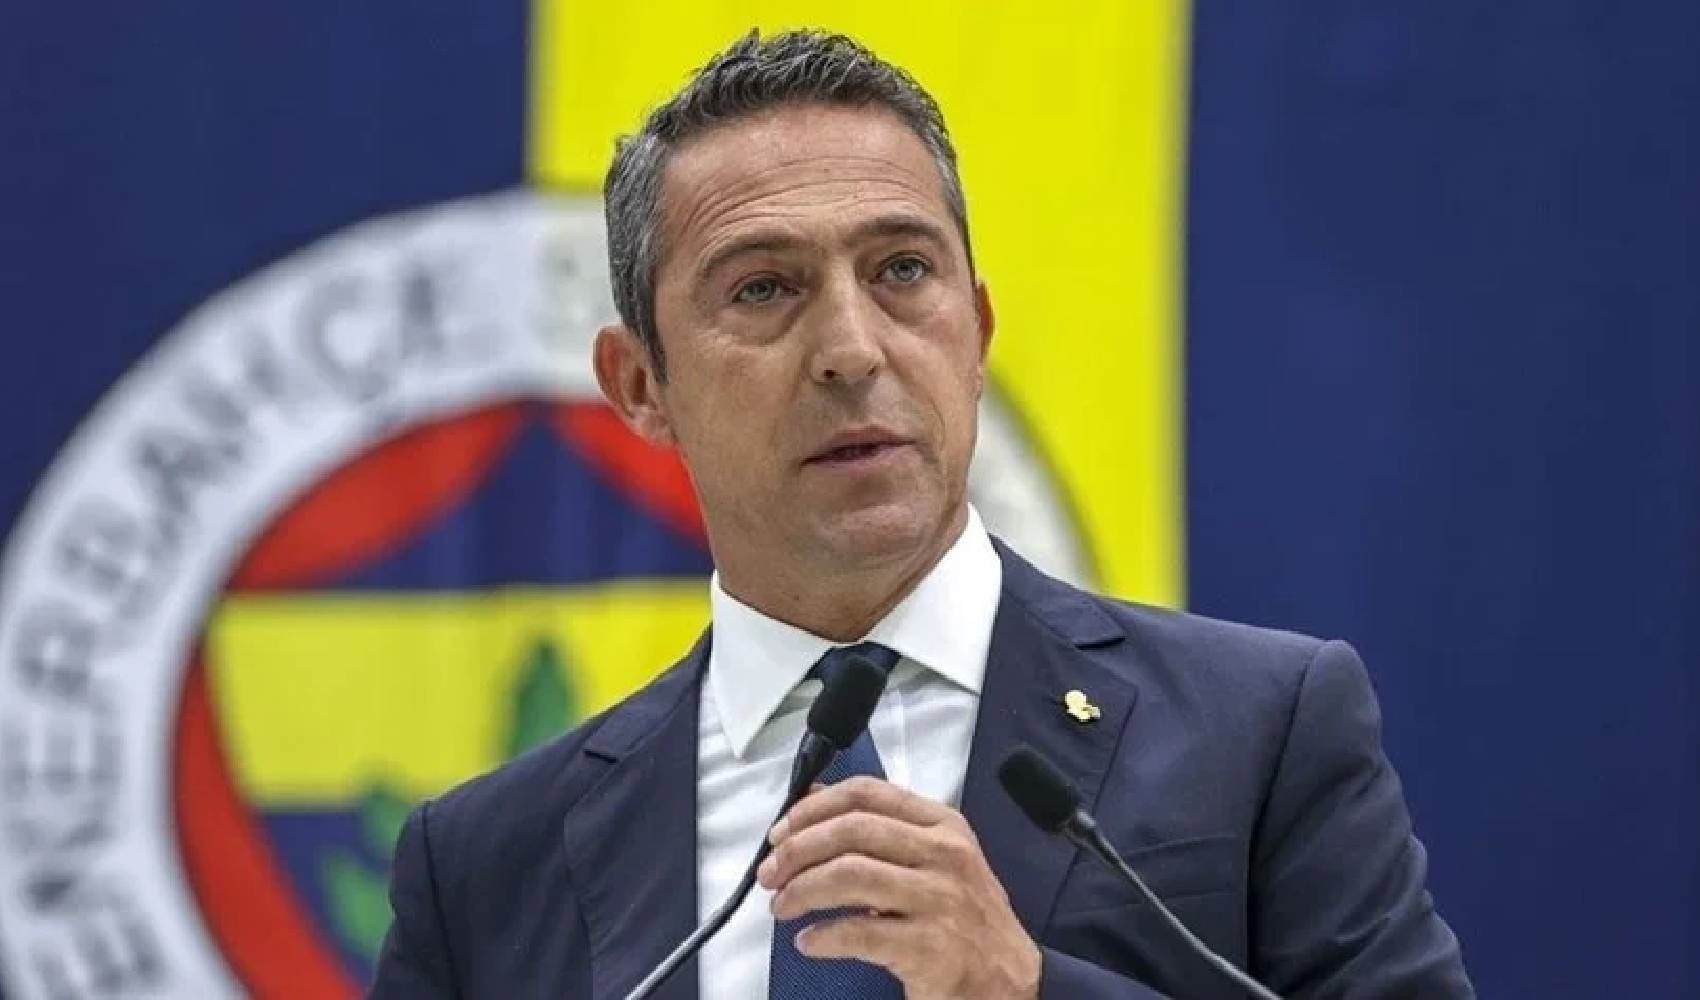 Fenerbahçe Spor Kulübü Başkanı Ali Koç, basın açıklamasında bulundu: Neden imza toplamaya karar verildi?